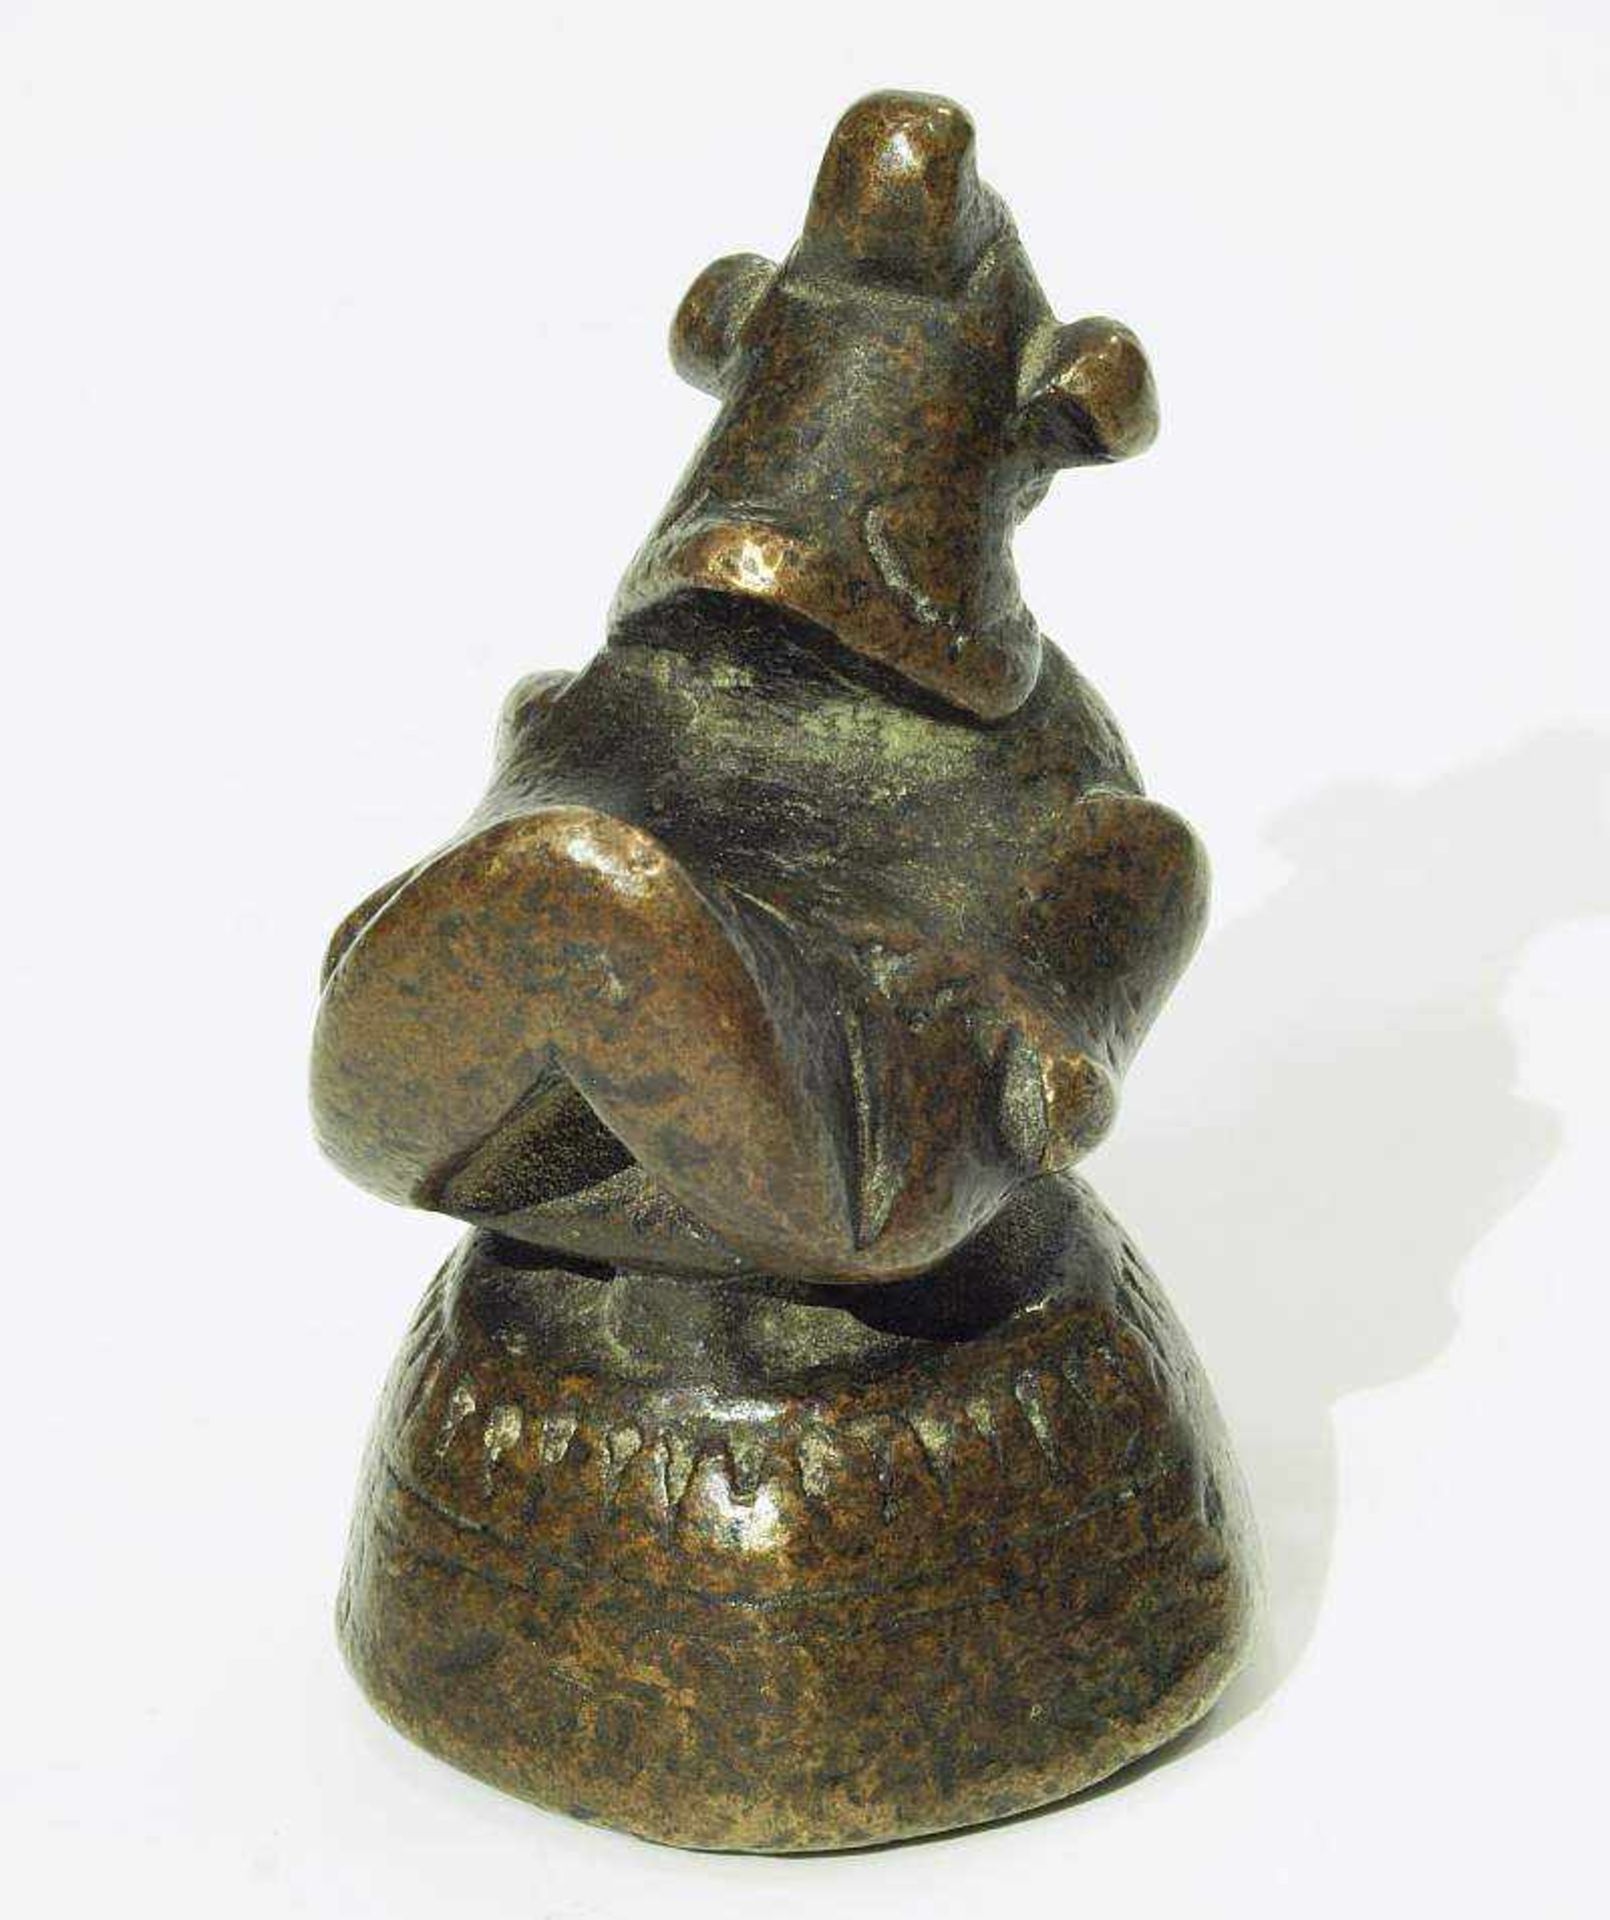 Opium Gewicht. Opium Gewicht in Entengestalt. Burma um 1800. Bronze, dunkel patiniert. Höhe 6,5 - Bild 4 aus 5